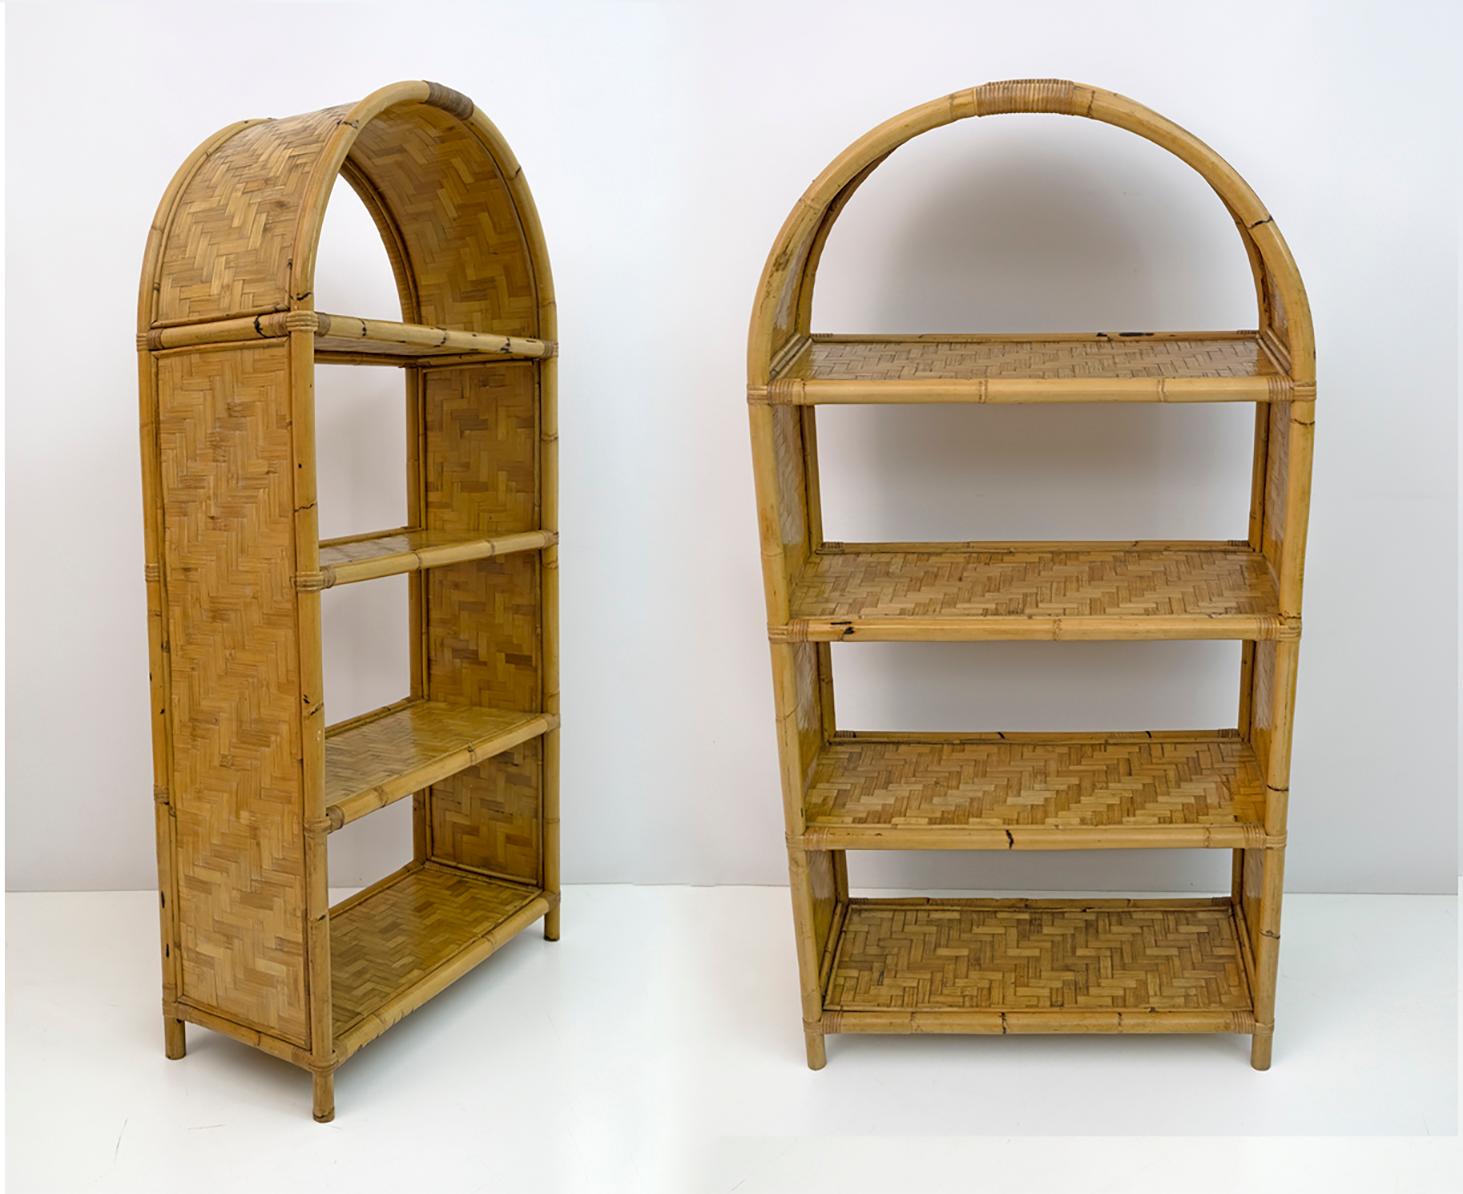 Schönes Paar Bücherregale aus den 1970er Jahren. Die Bücherregale haben vier Einlegeböden und sind mit Bambusmosaik verziert.